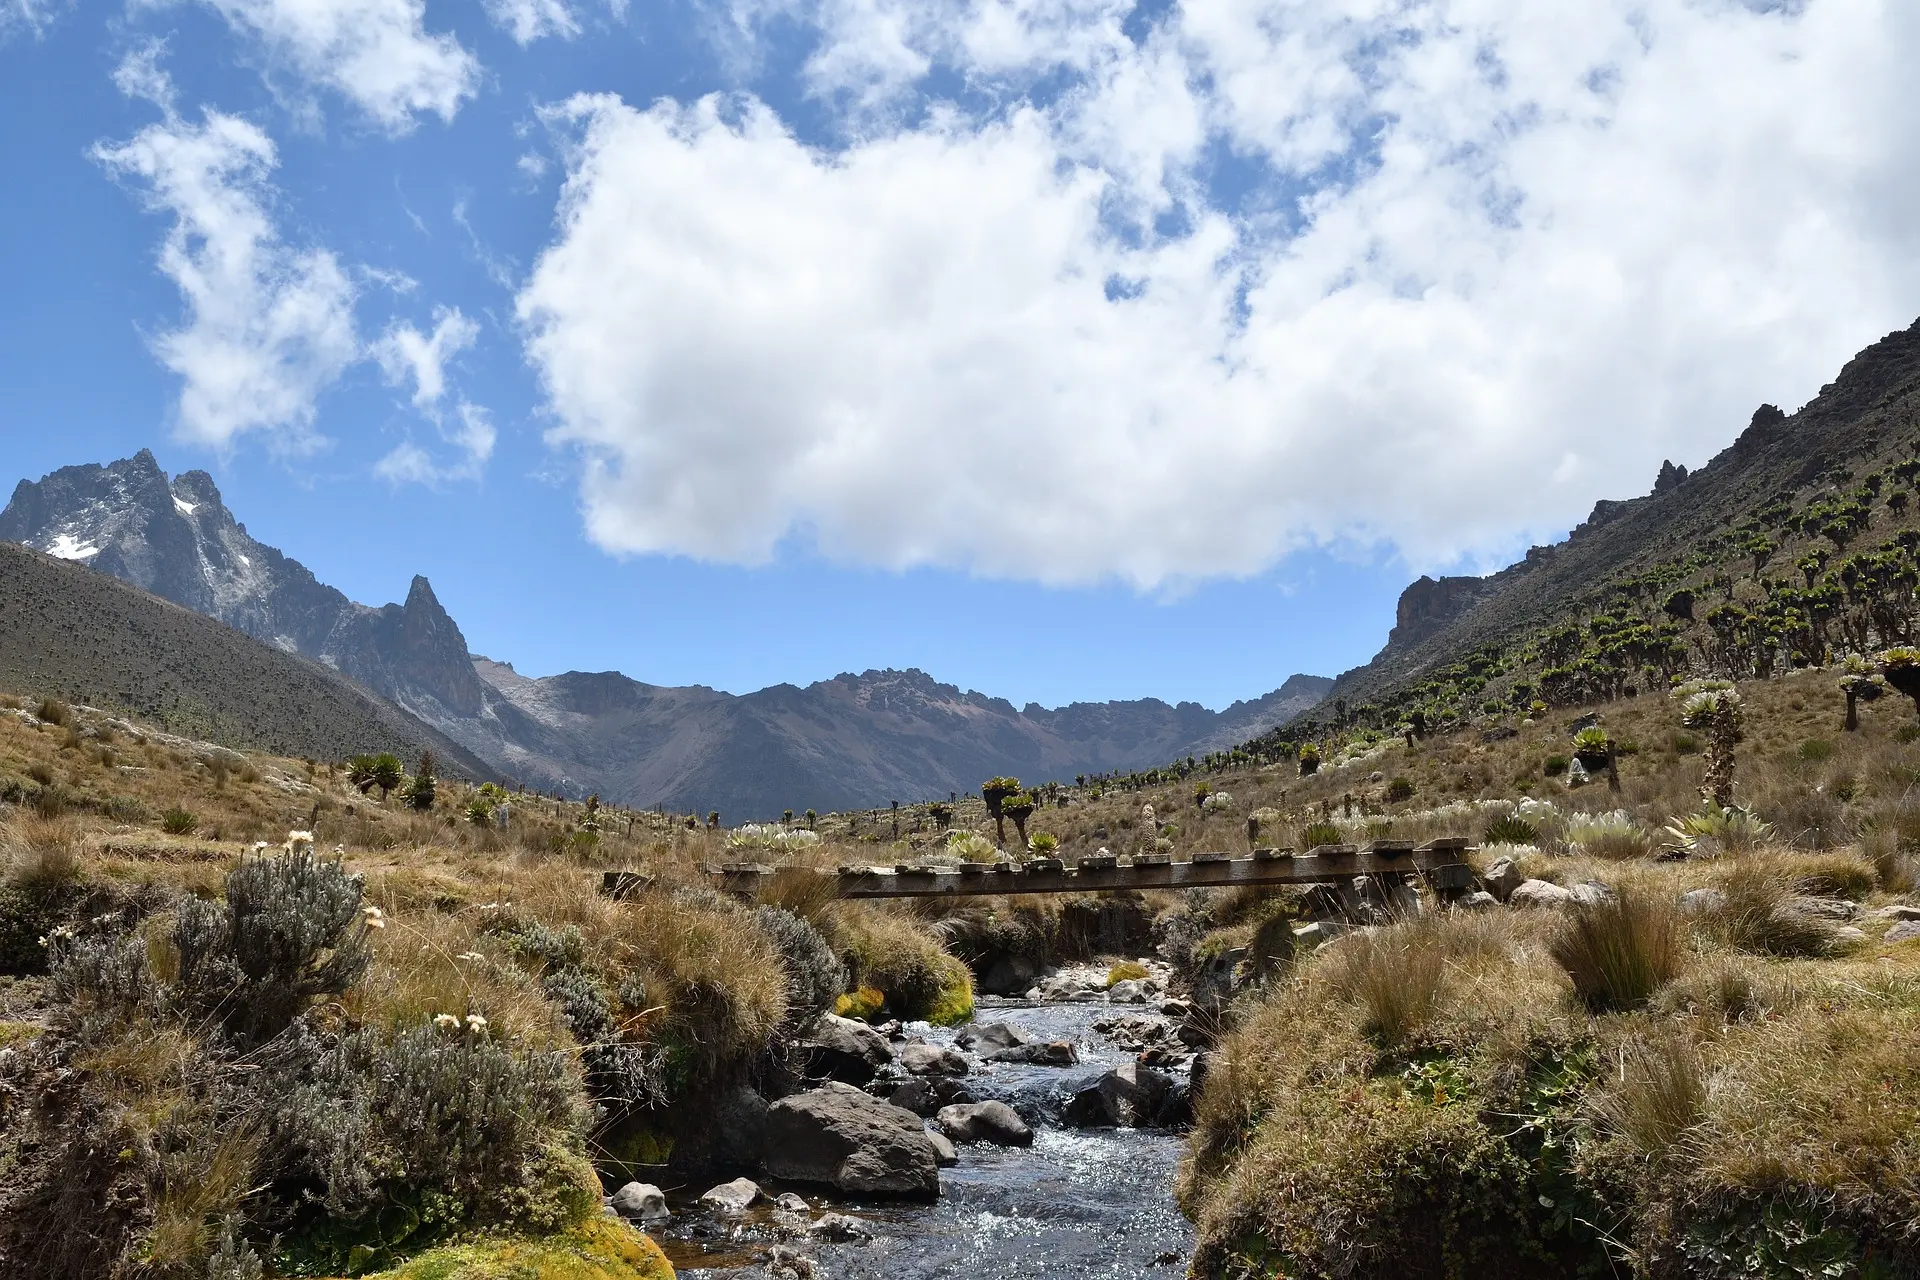 Honeymoon to Kenya - Mount Kenya National Park